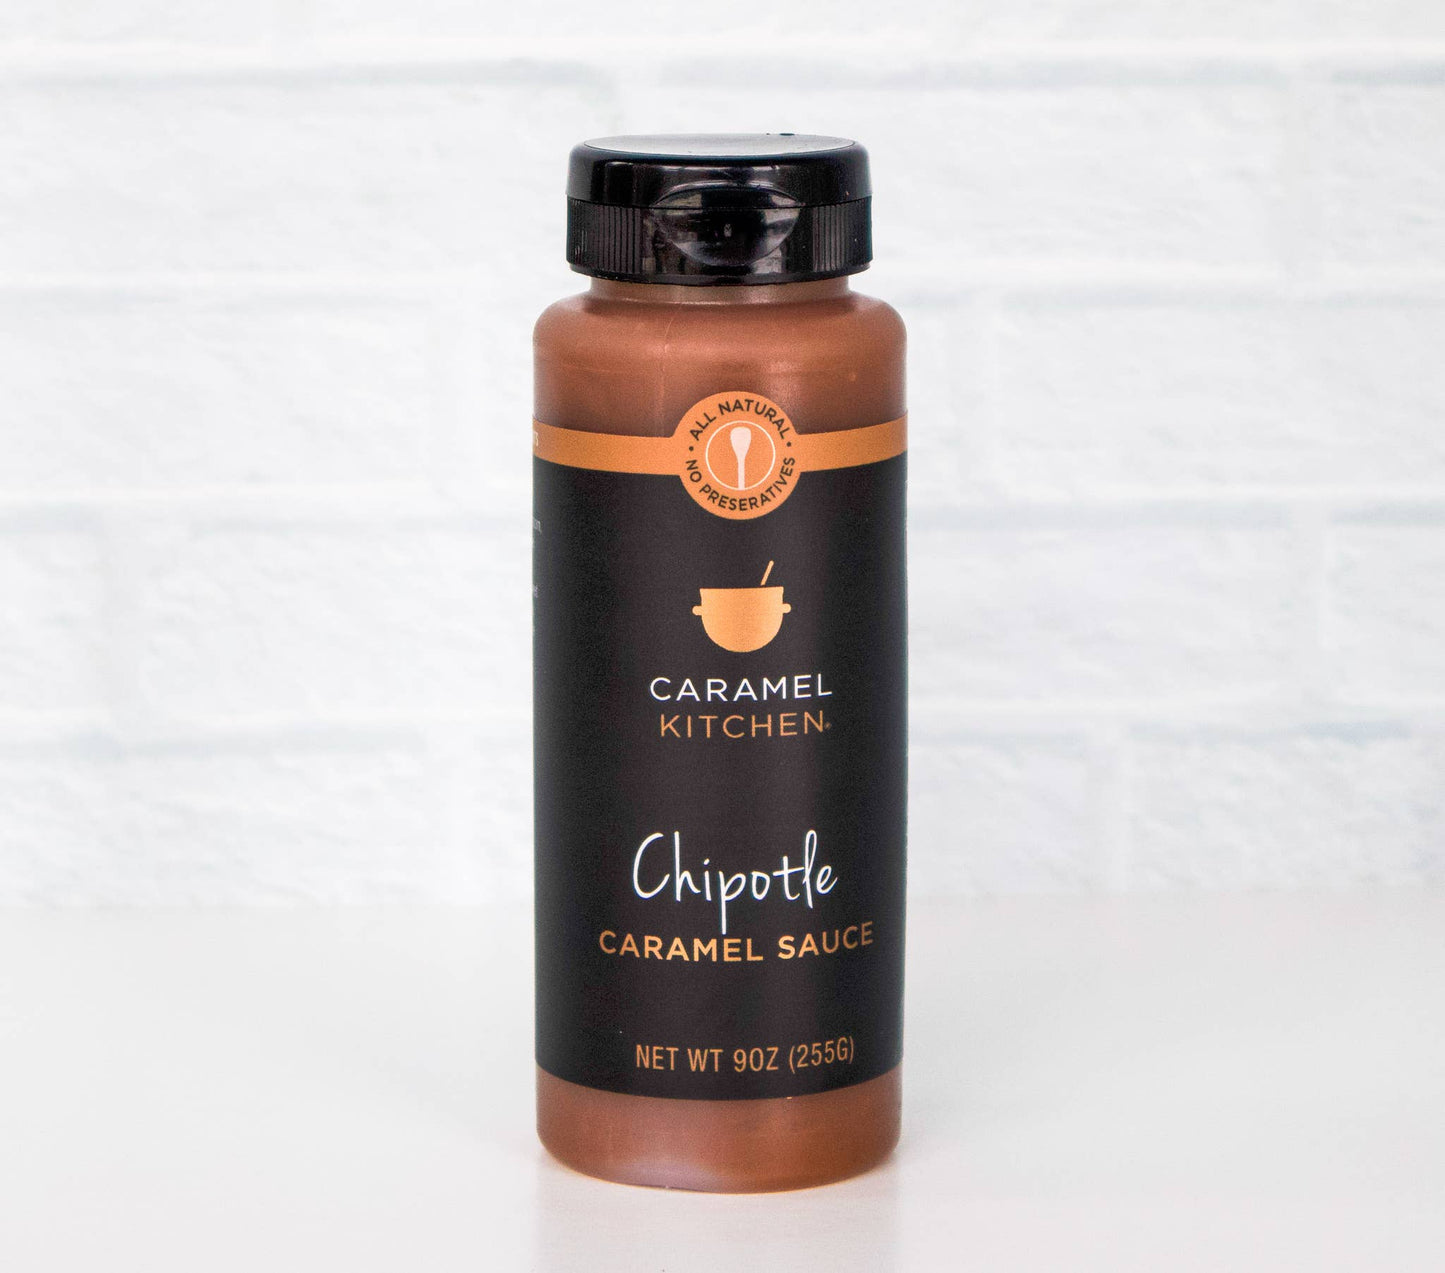 Chipotle Caramel Sauce